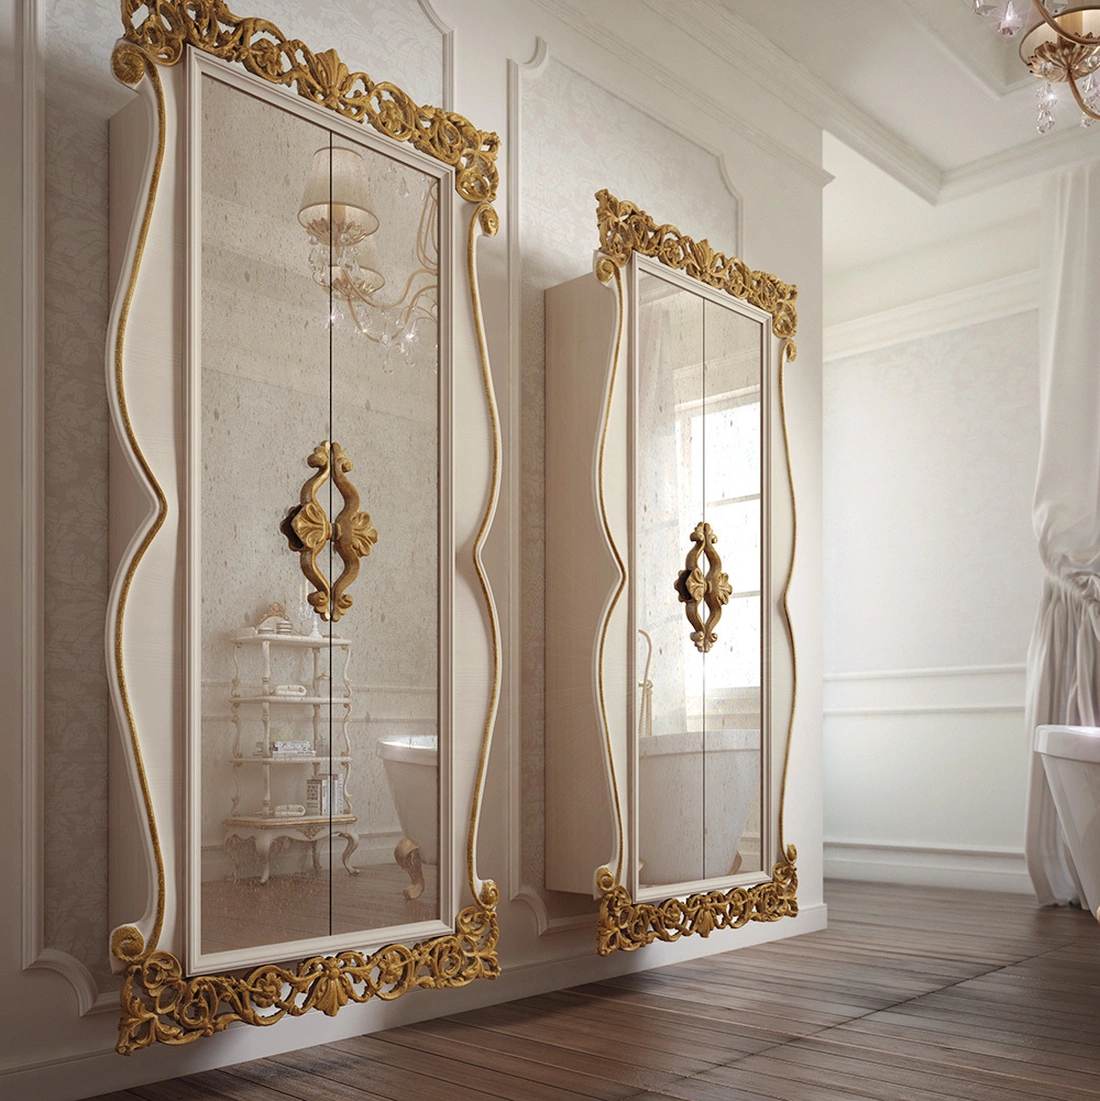 Современная классика позволяет комбинировать стекло с позолотой в отделке ванной комнаты.